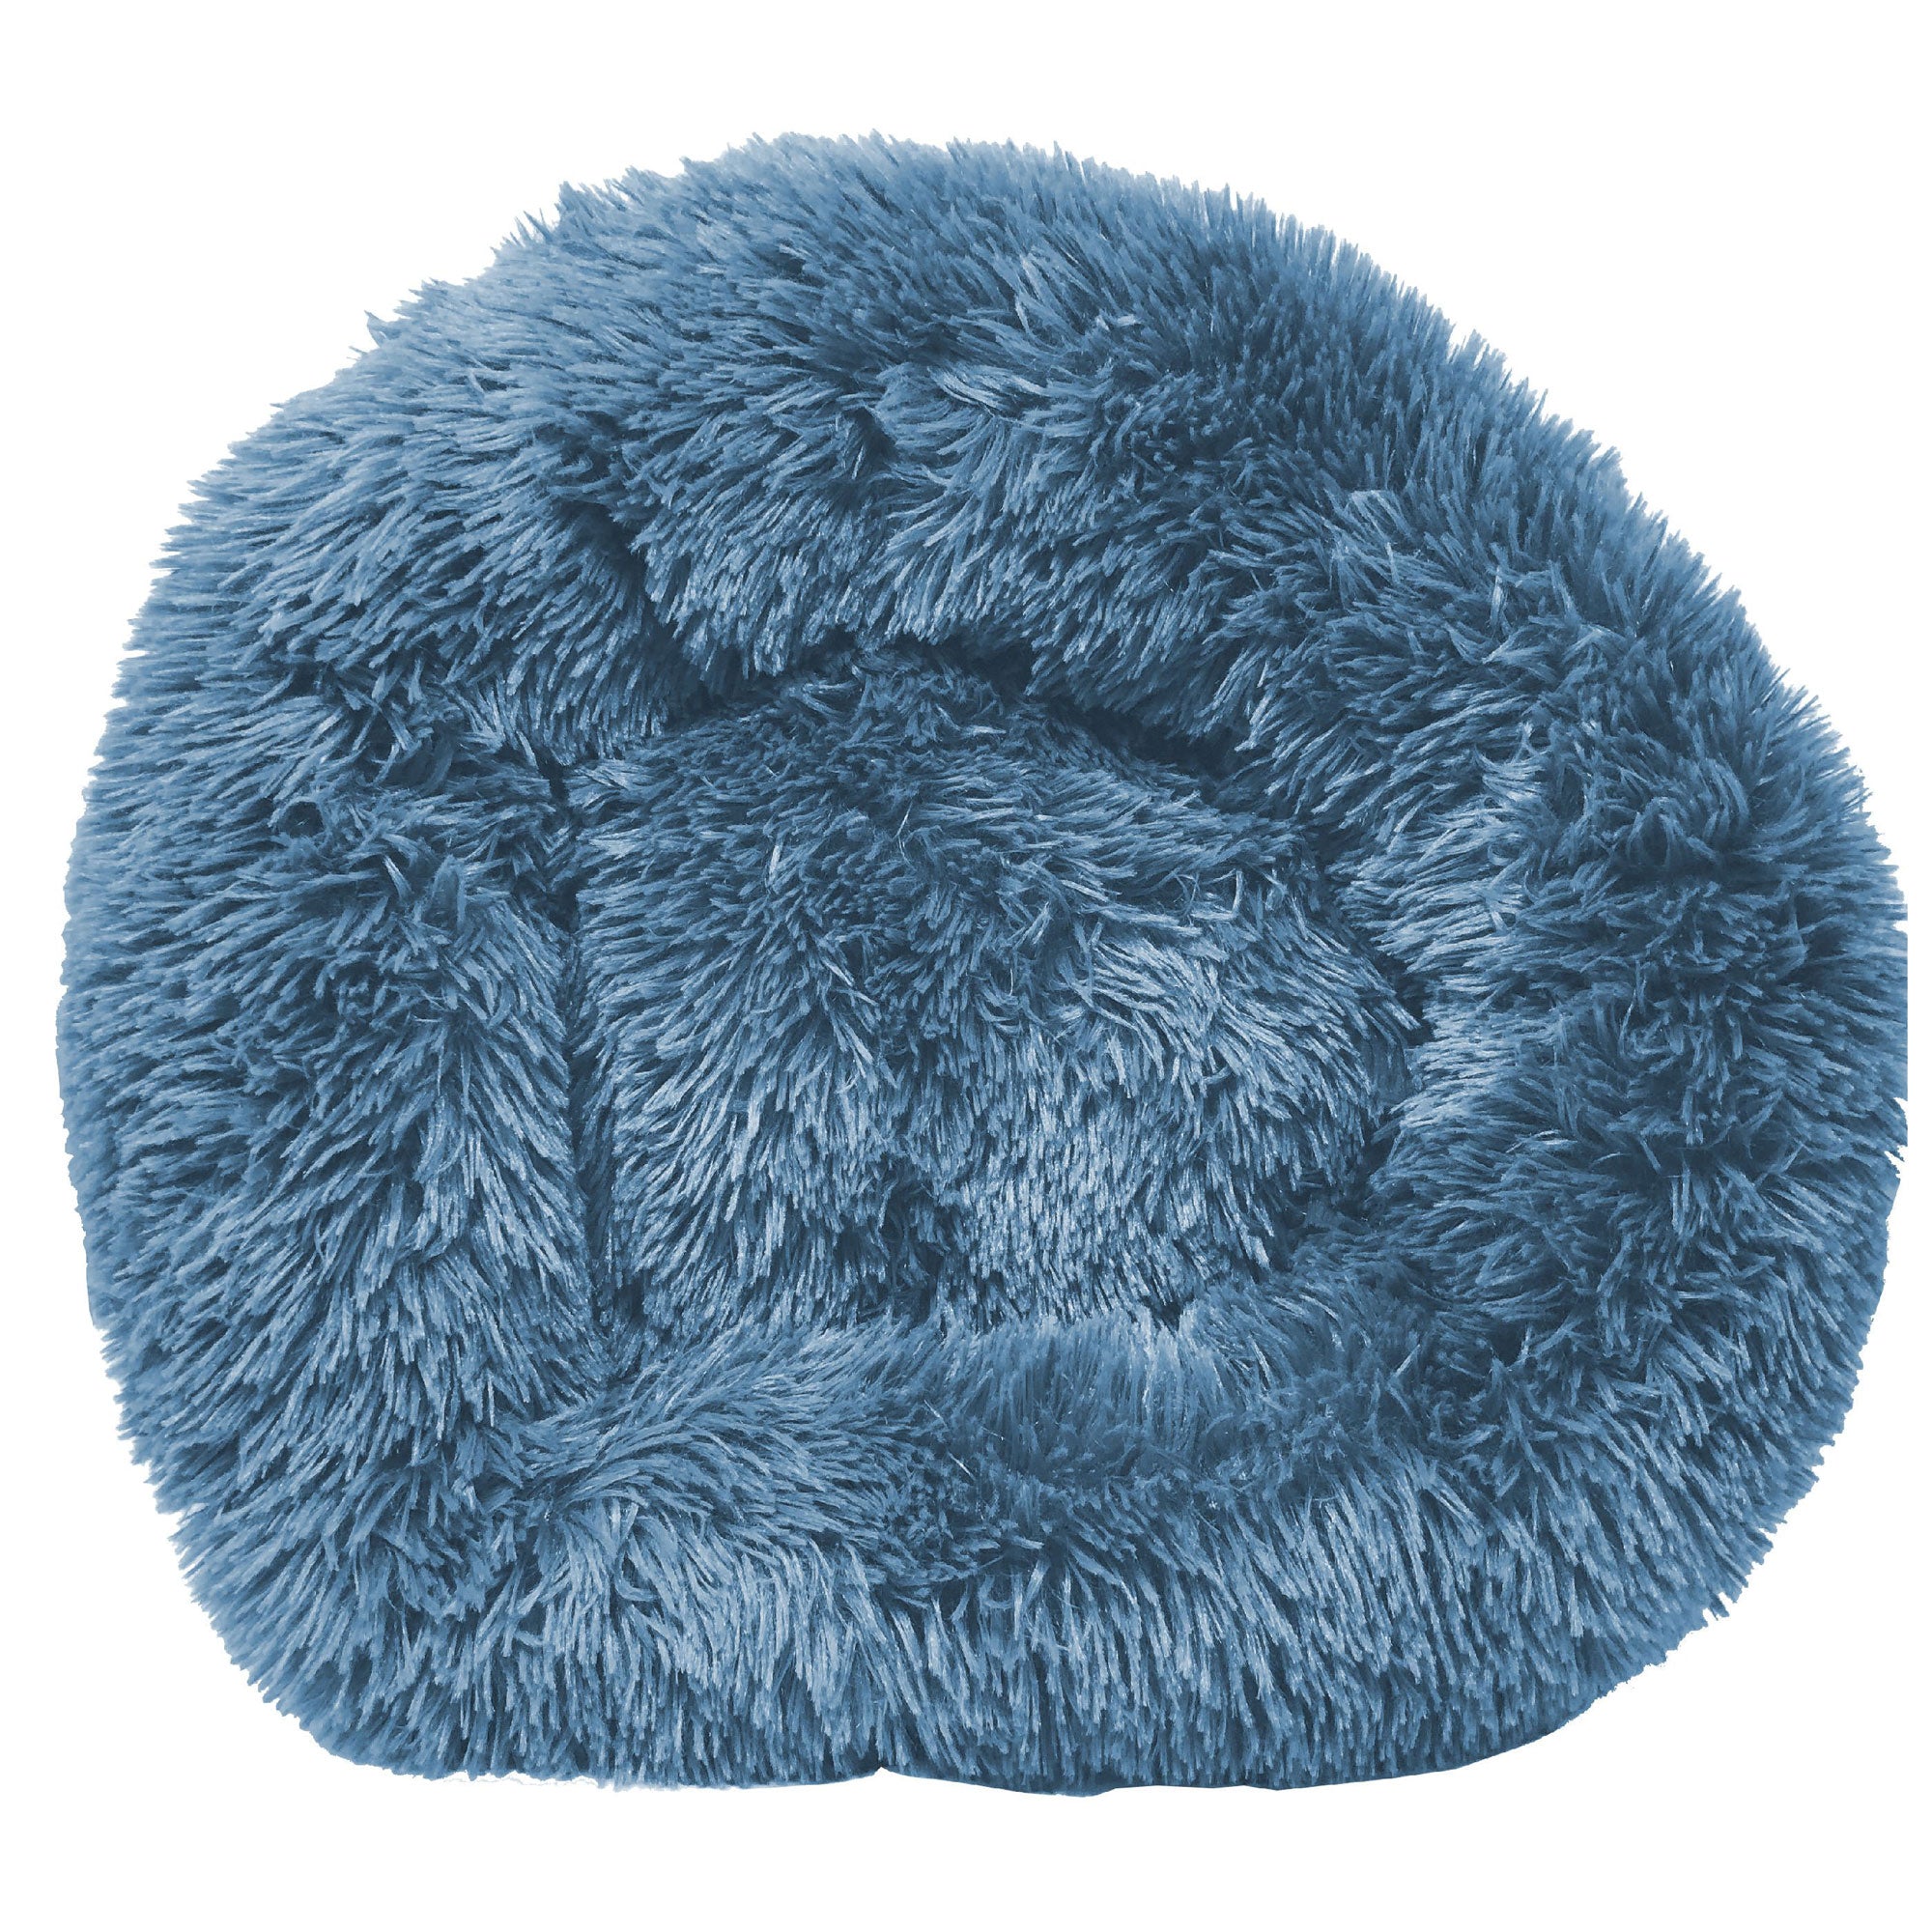 Pet Life Nestler Plush & Soft Dog Bed - Blue - Large